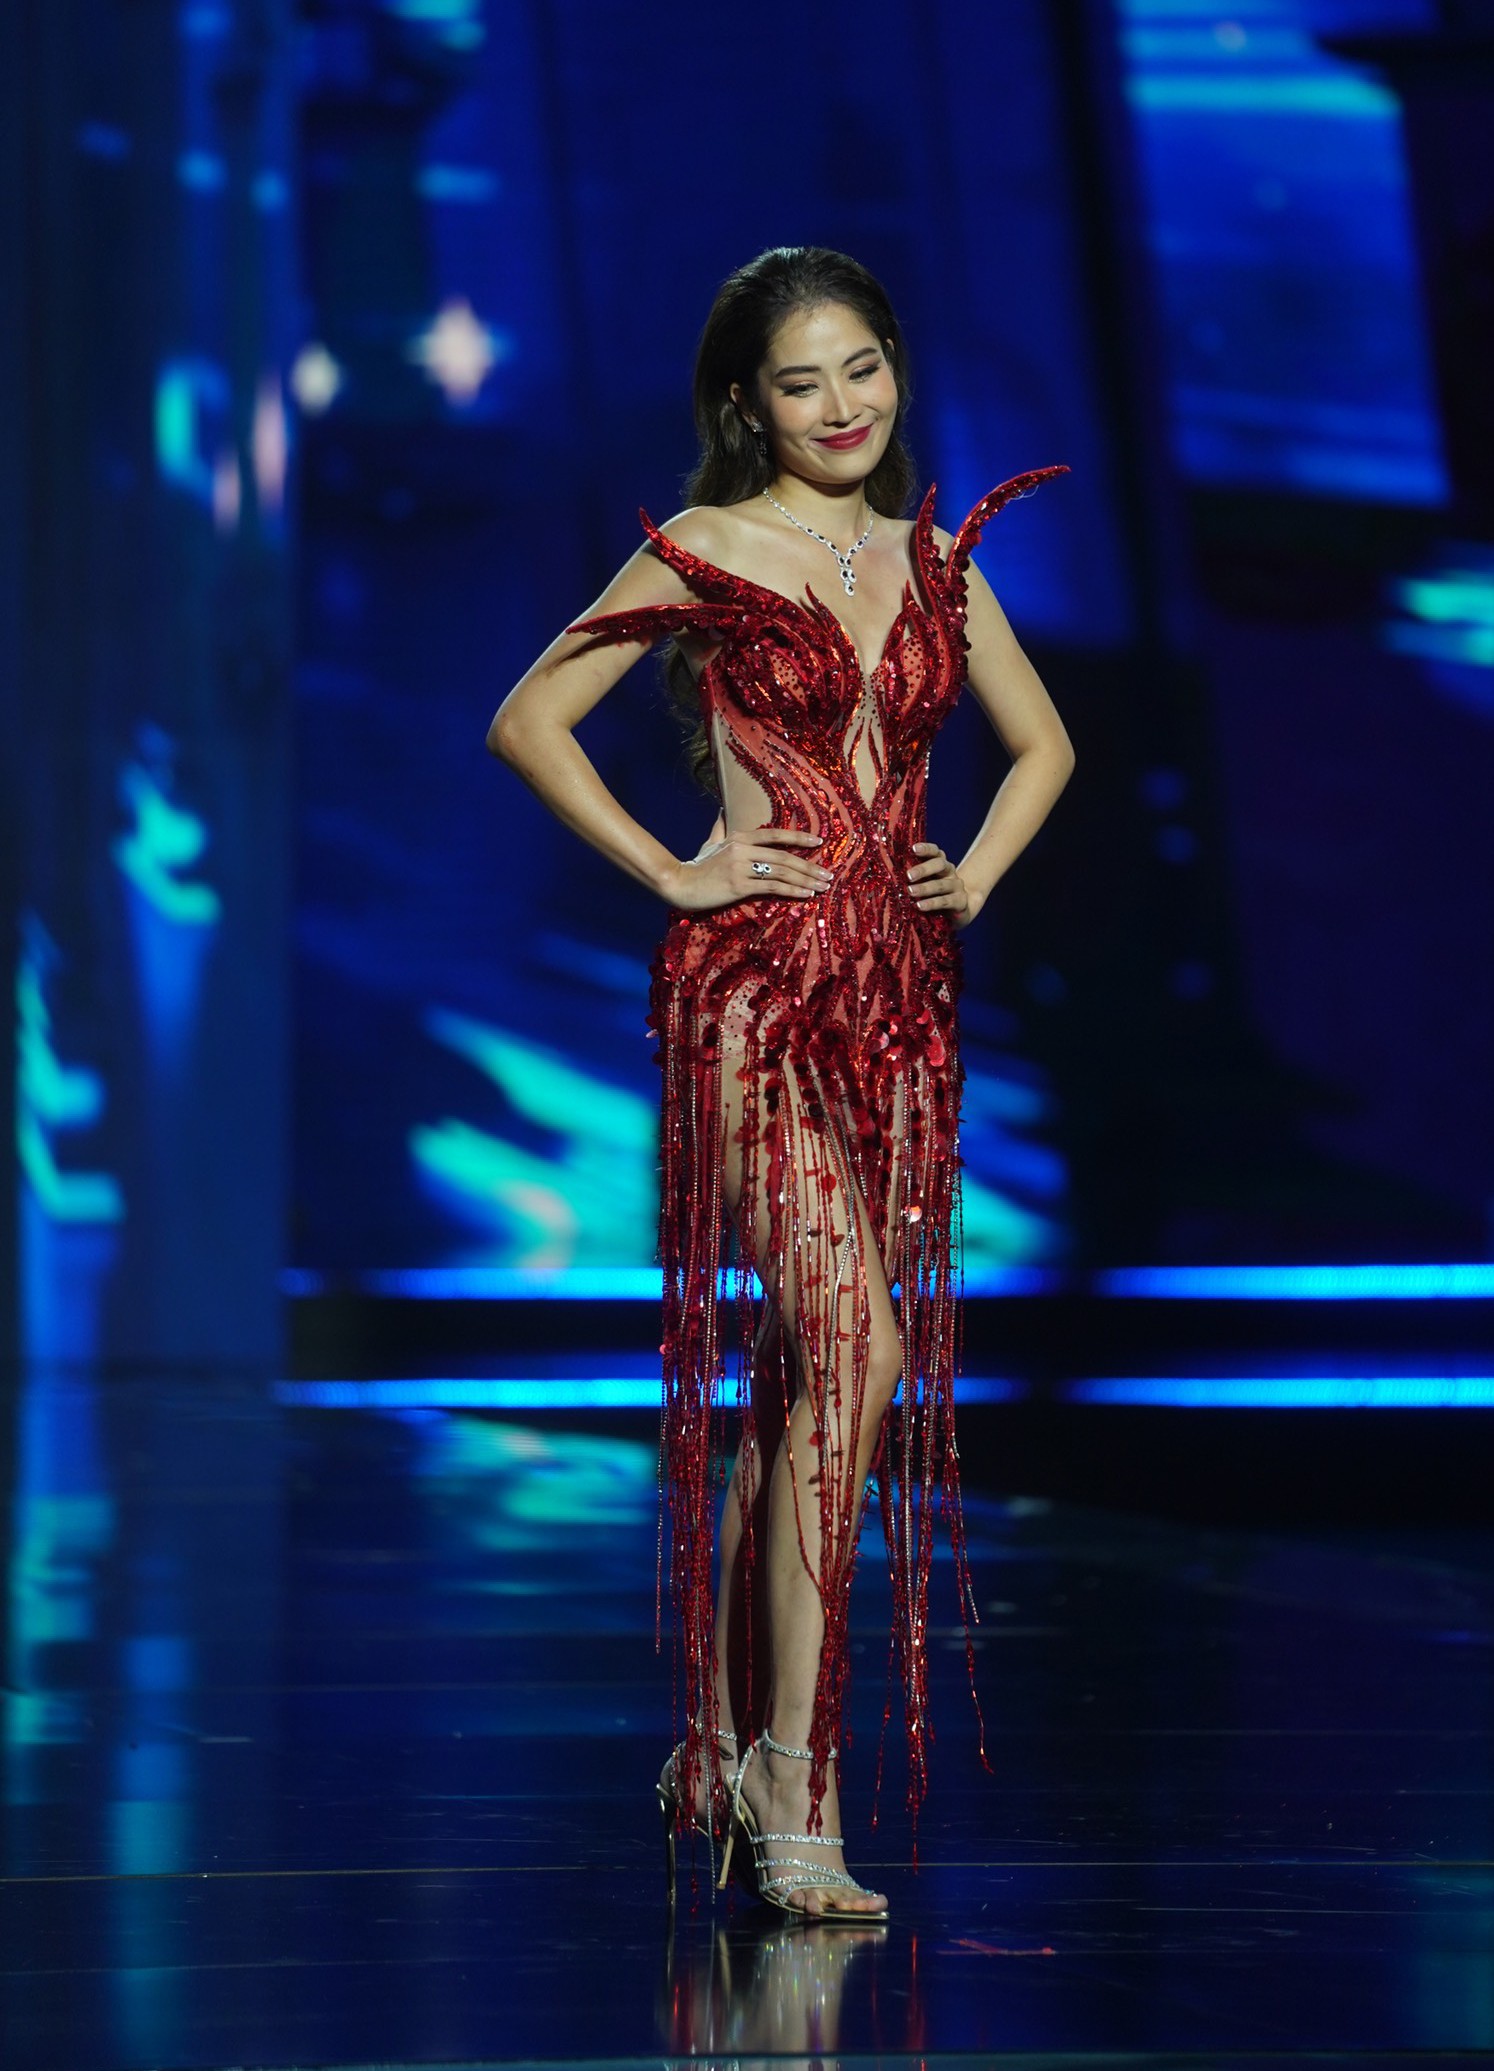 Váy dạ hội cut-out tại chung kết Miss Universe Vietnam - Ảnh 4.